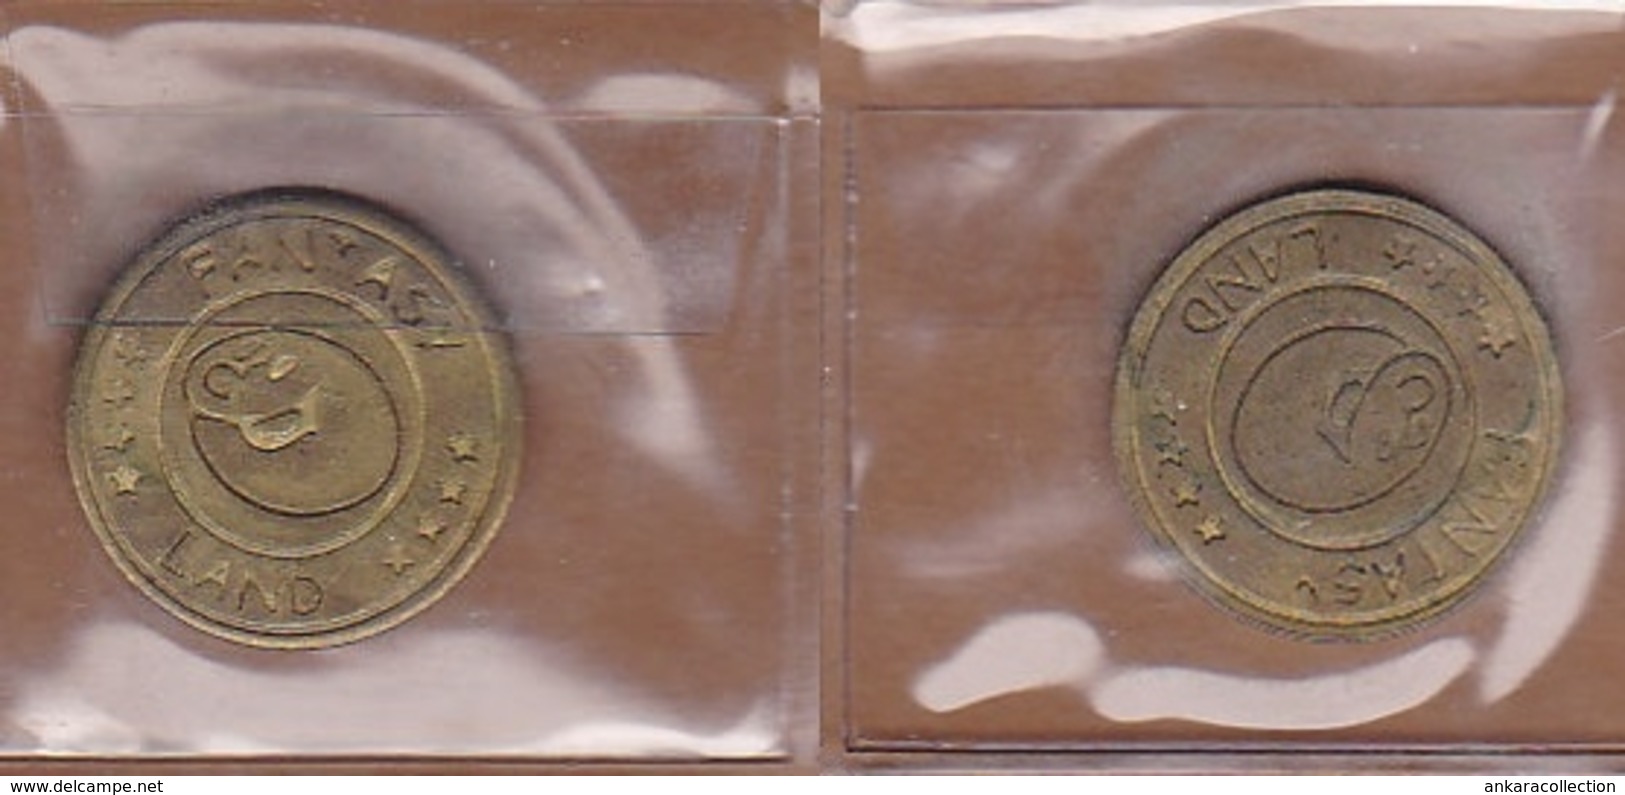 AC - FANTASY LAND AMUSEMENT TOKEN JETON - Pièces écrasées (Elongated Coins)